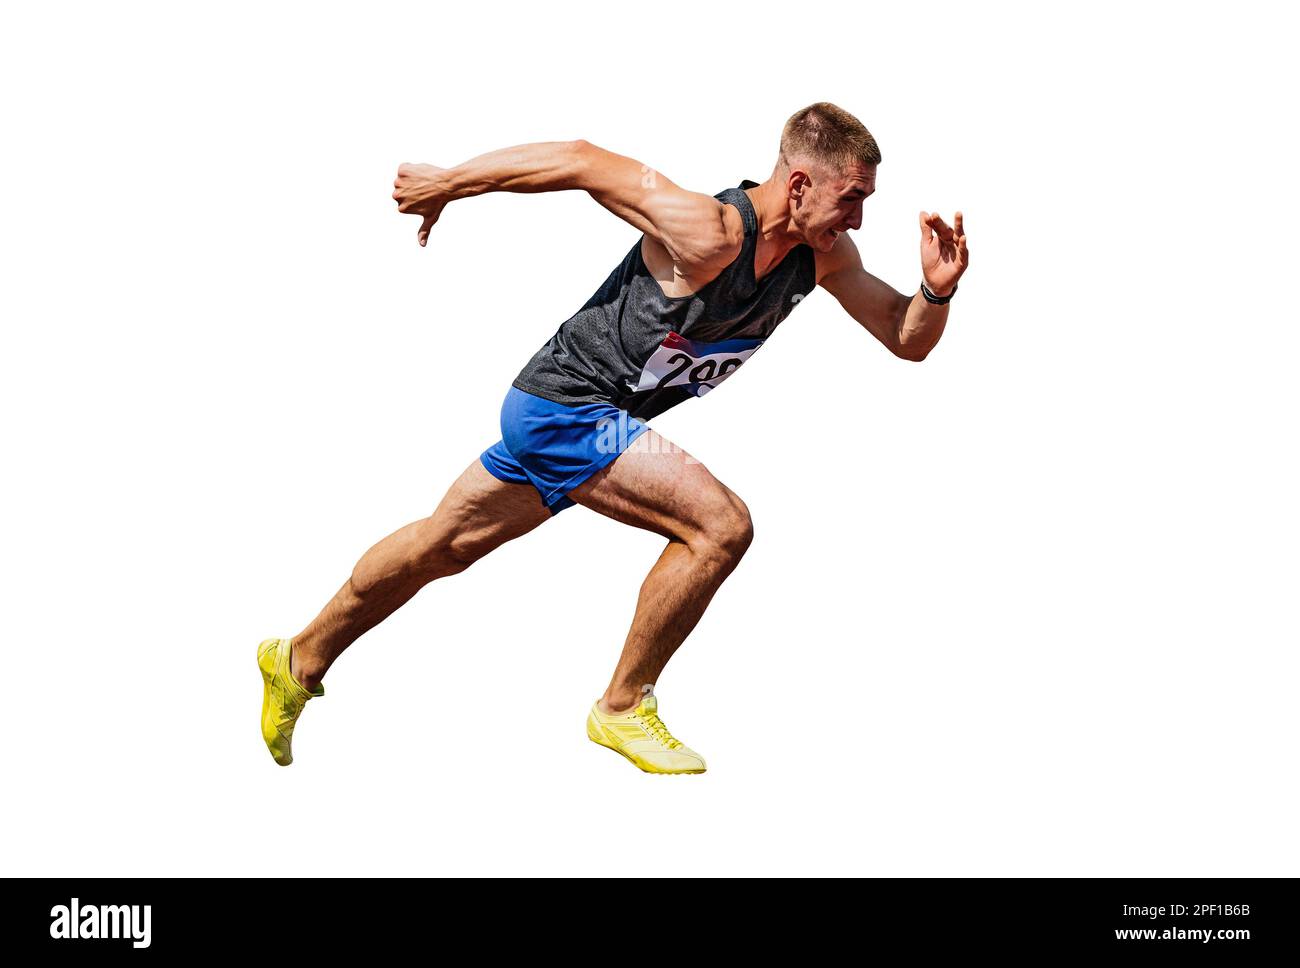 Sportler, der mit dem Laufen beginnt, Sprint auf weißem Hintergrund, Sportfoto Stockfoto